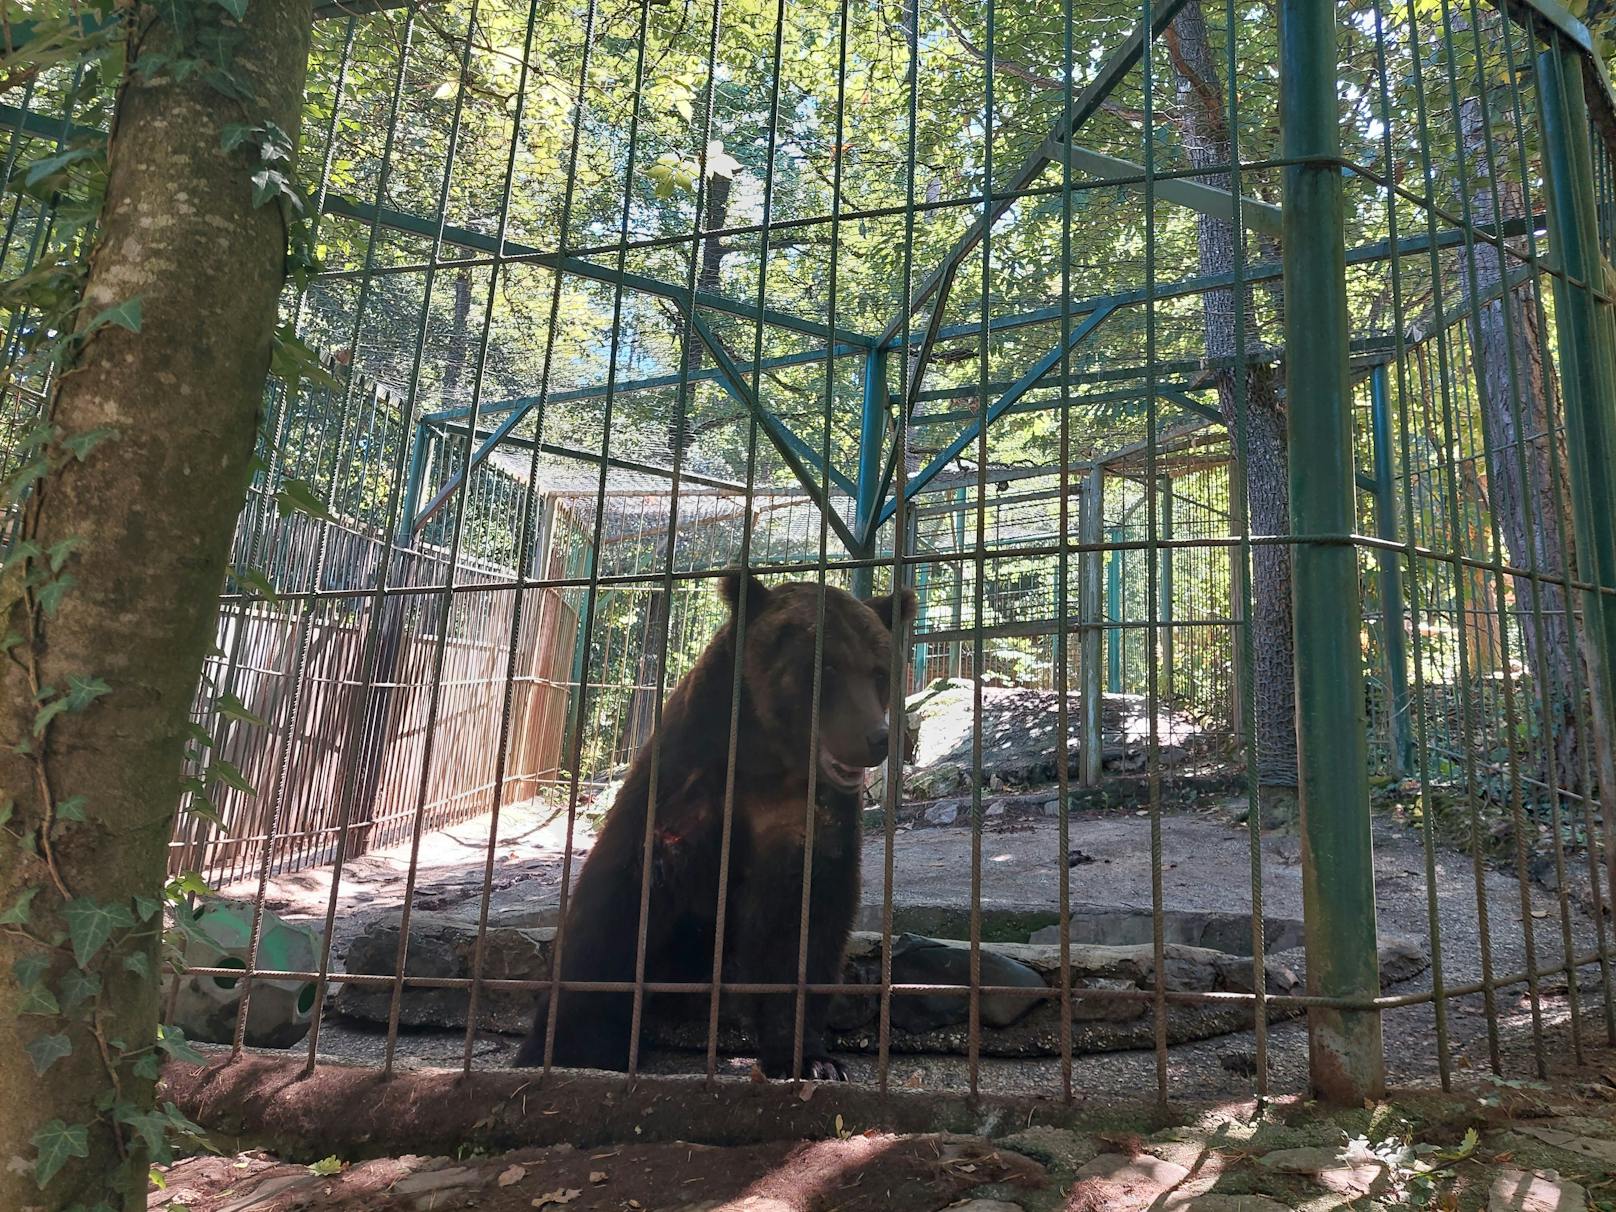 Untersuchung des männlichen Bären Tim, der im privaten Zoopark Rozman, Horjul, Slowenien, gehalten wird.